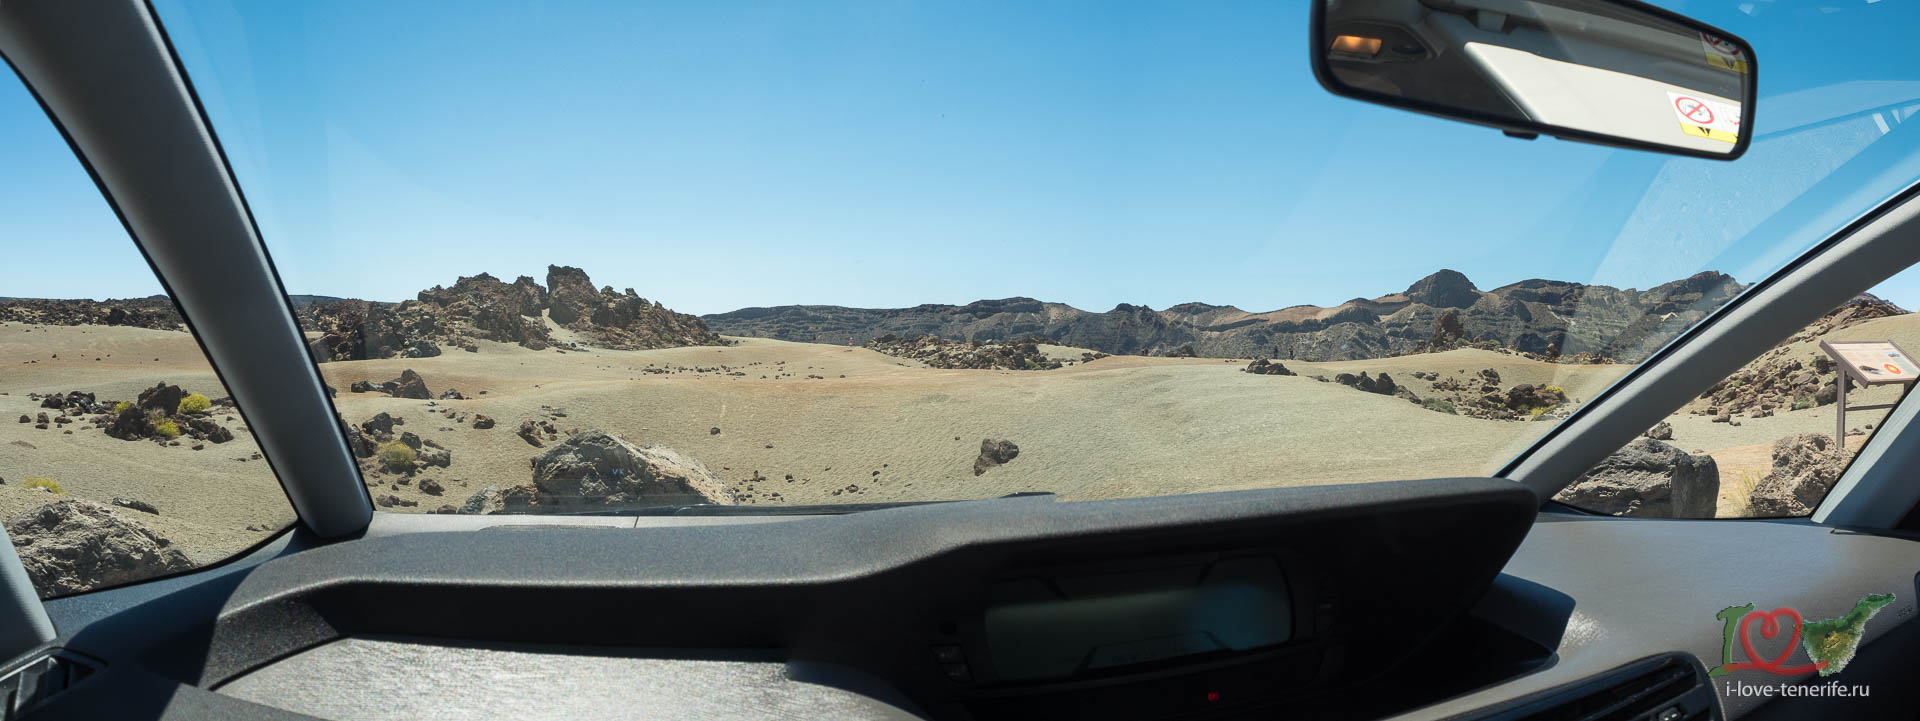 Экскурсия на 7-местном автомобиле с панорамным обзором